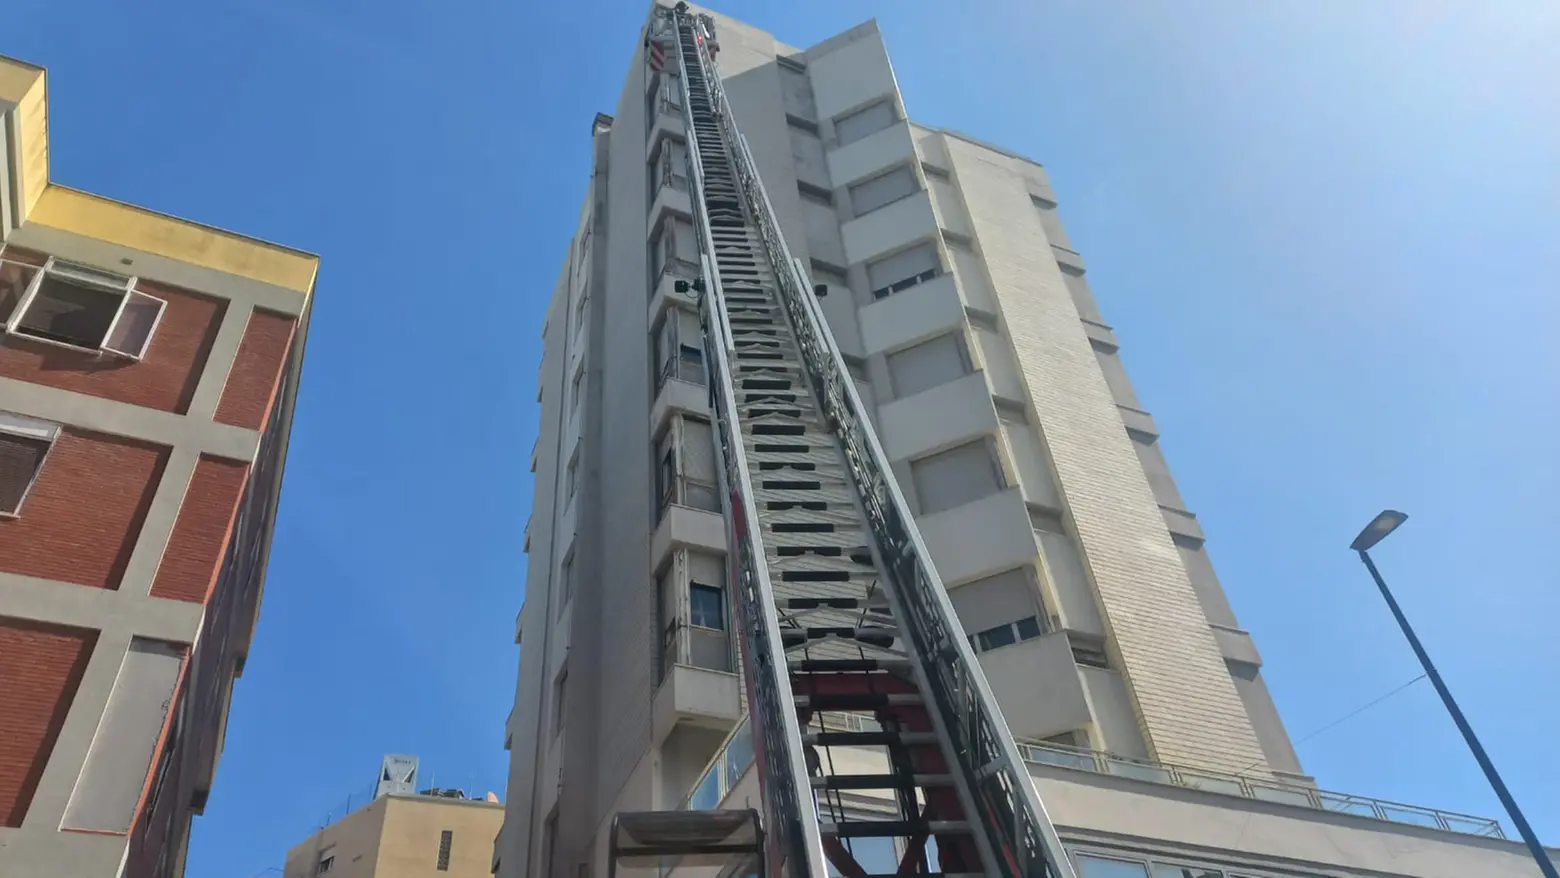 L'intervento dei pompieri all'hotel Lido, viale Trieste